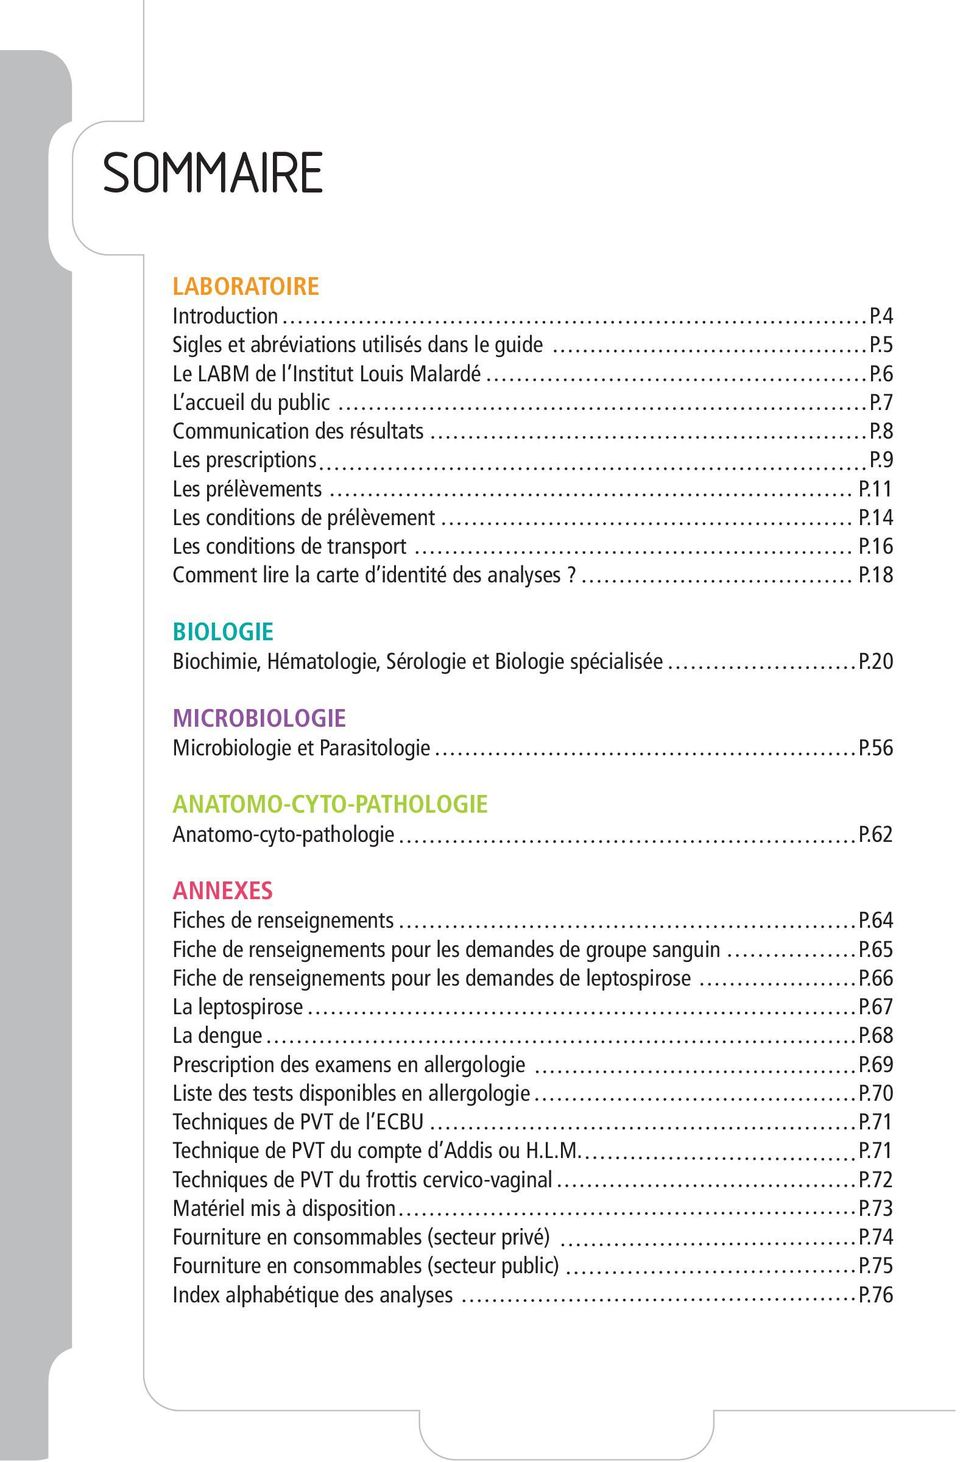 20 Microbiologie Microbiologie et Parasitologie P.56 Anatomo-cyto-pathologie Anatomo-cyto-pathologie P.62 Annexes Fiches de renseignements P.